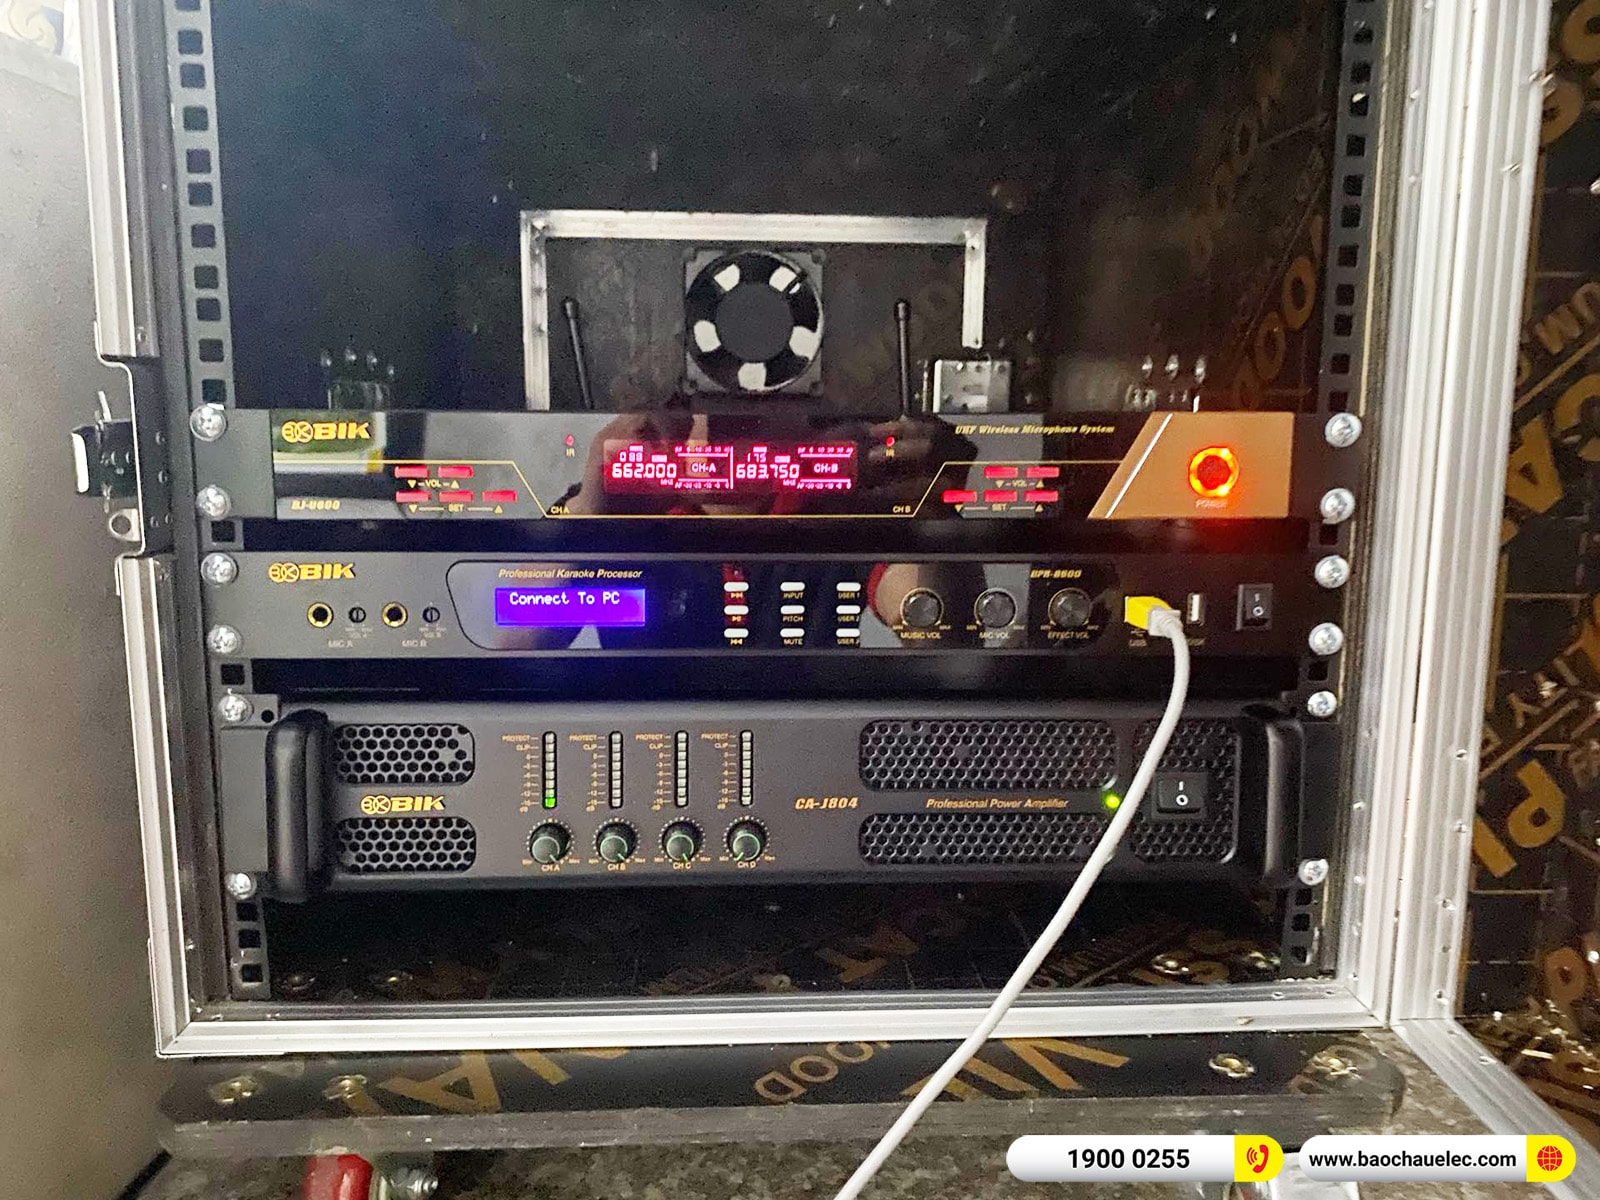 Lắp đặt dàn karaoke BIK hơn 51tr cho anh Hồng tại Nam Định (BIK BSP 412II, CA-J804, BPR-8600, W66 Plus, BJ-U600)